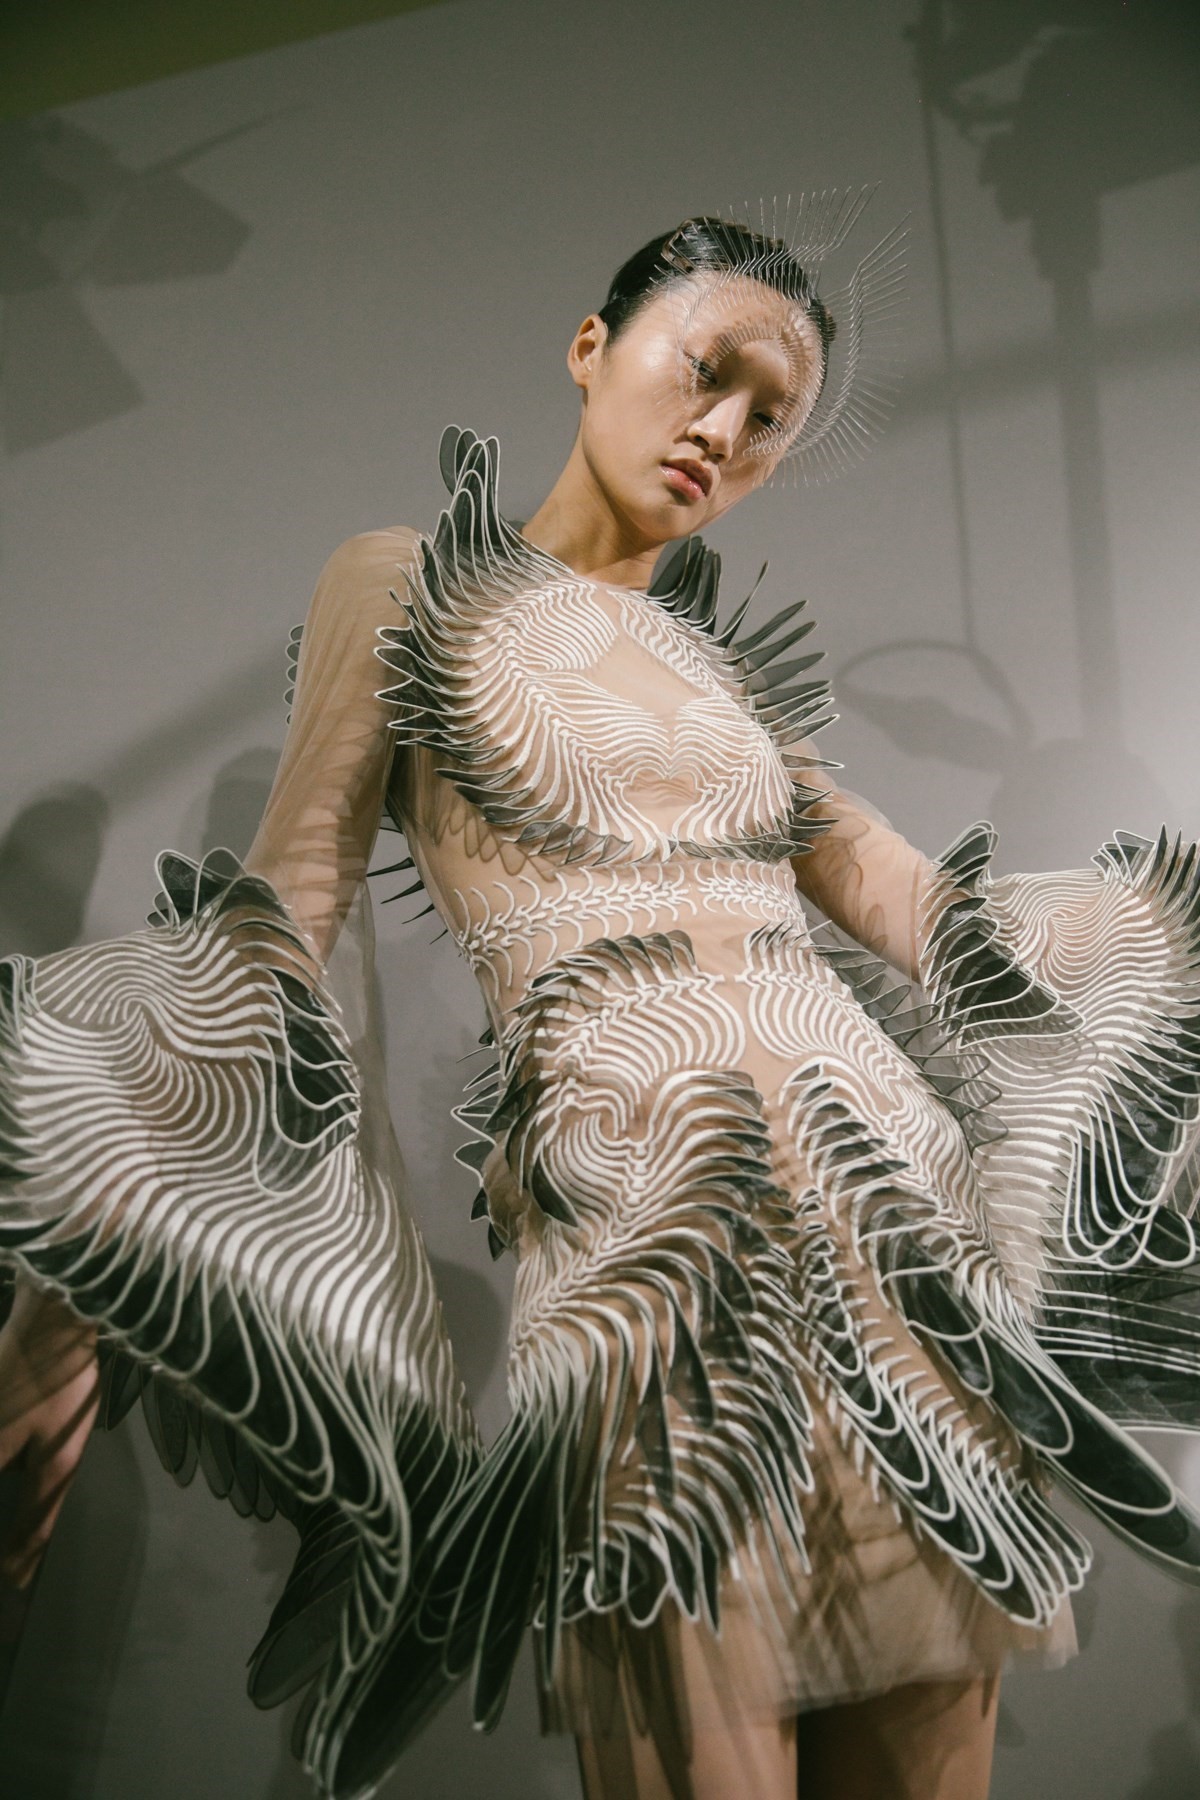 Go see Iris Van Herpen's hi-tech haute couture sculptures IRL in Paris